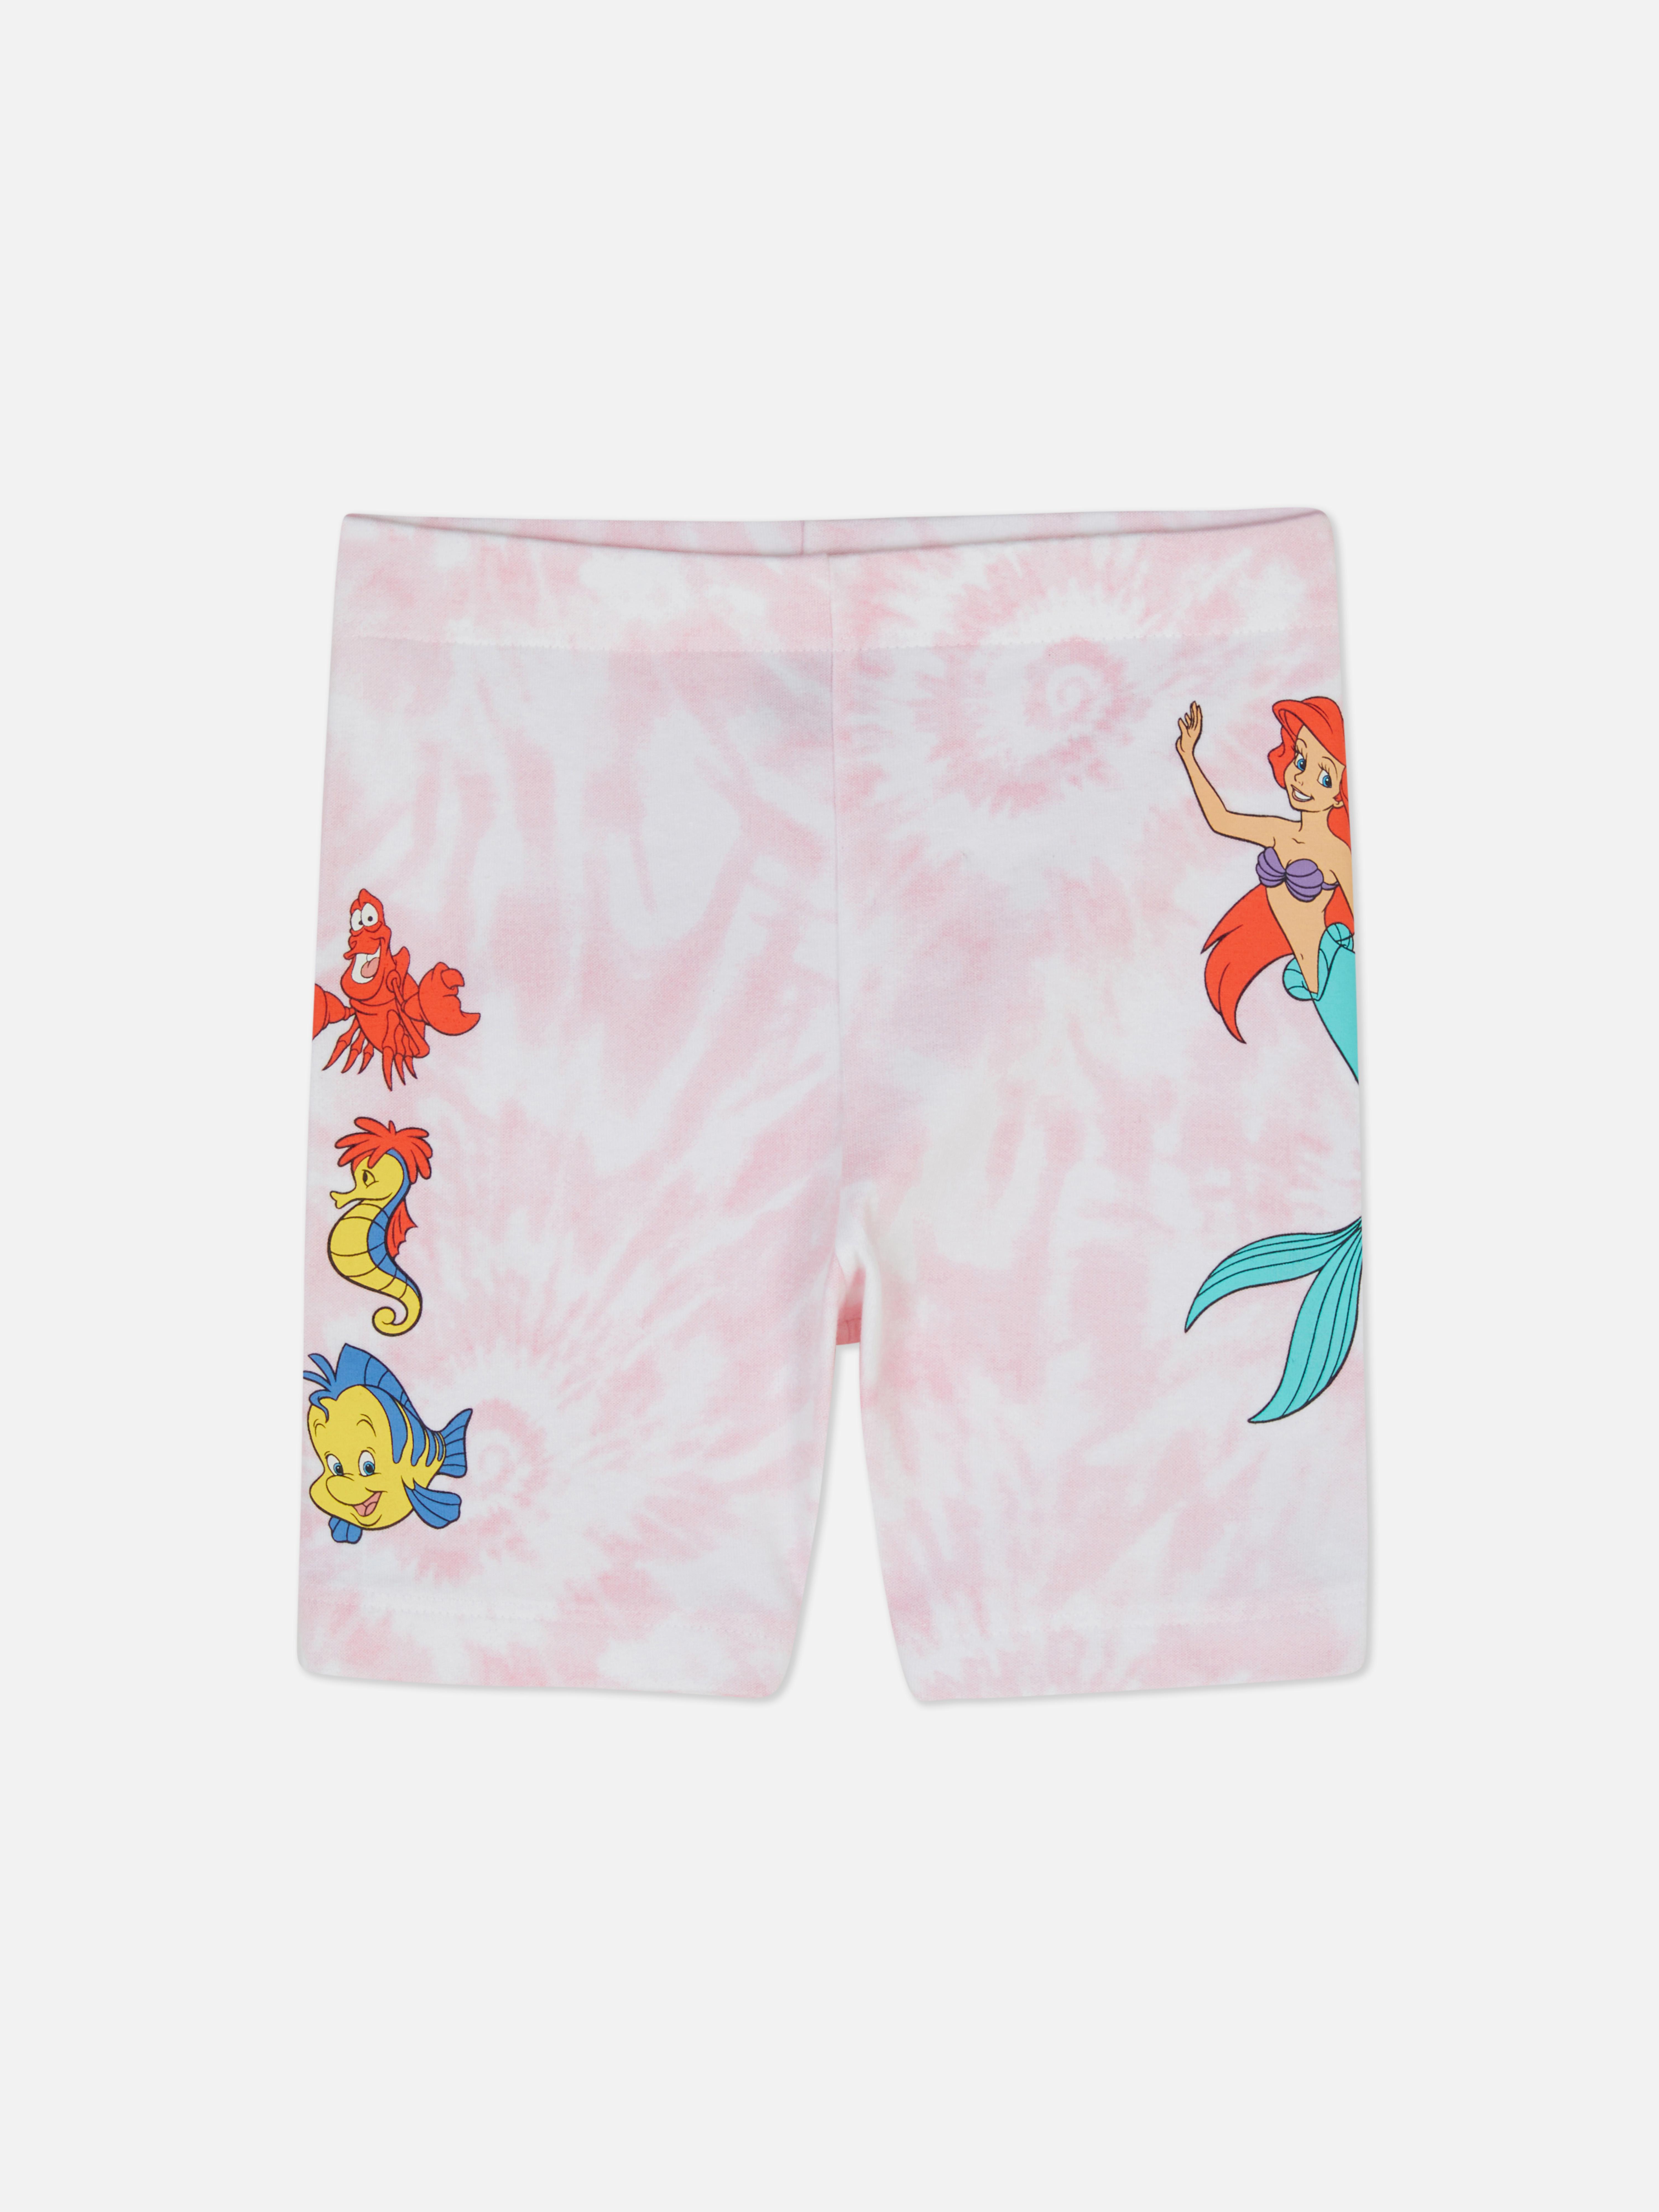 Disney's The Little Mermaid Tie-Dye Shorts